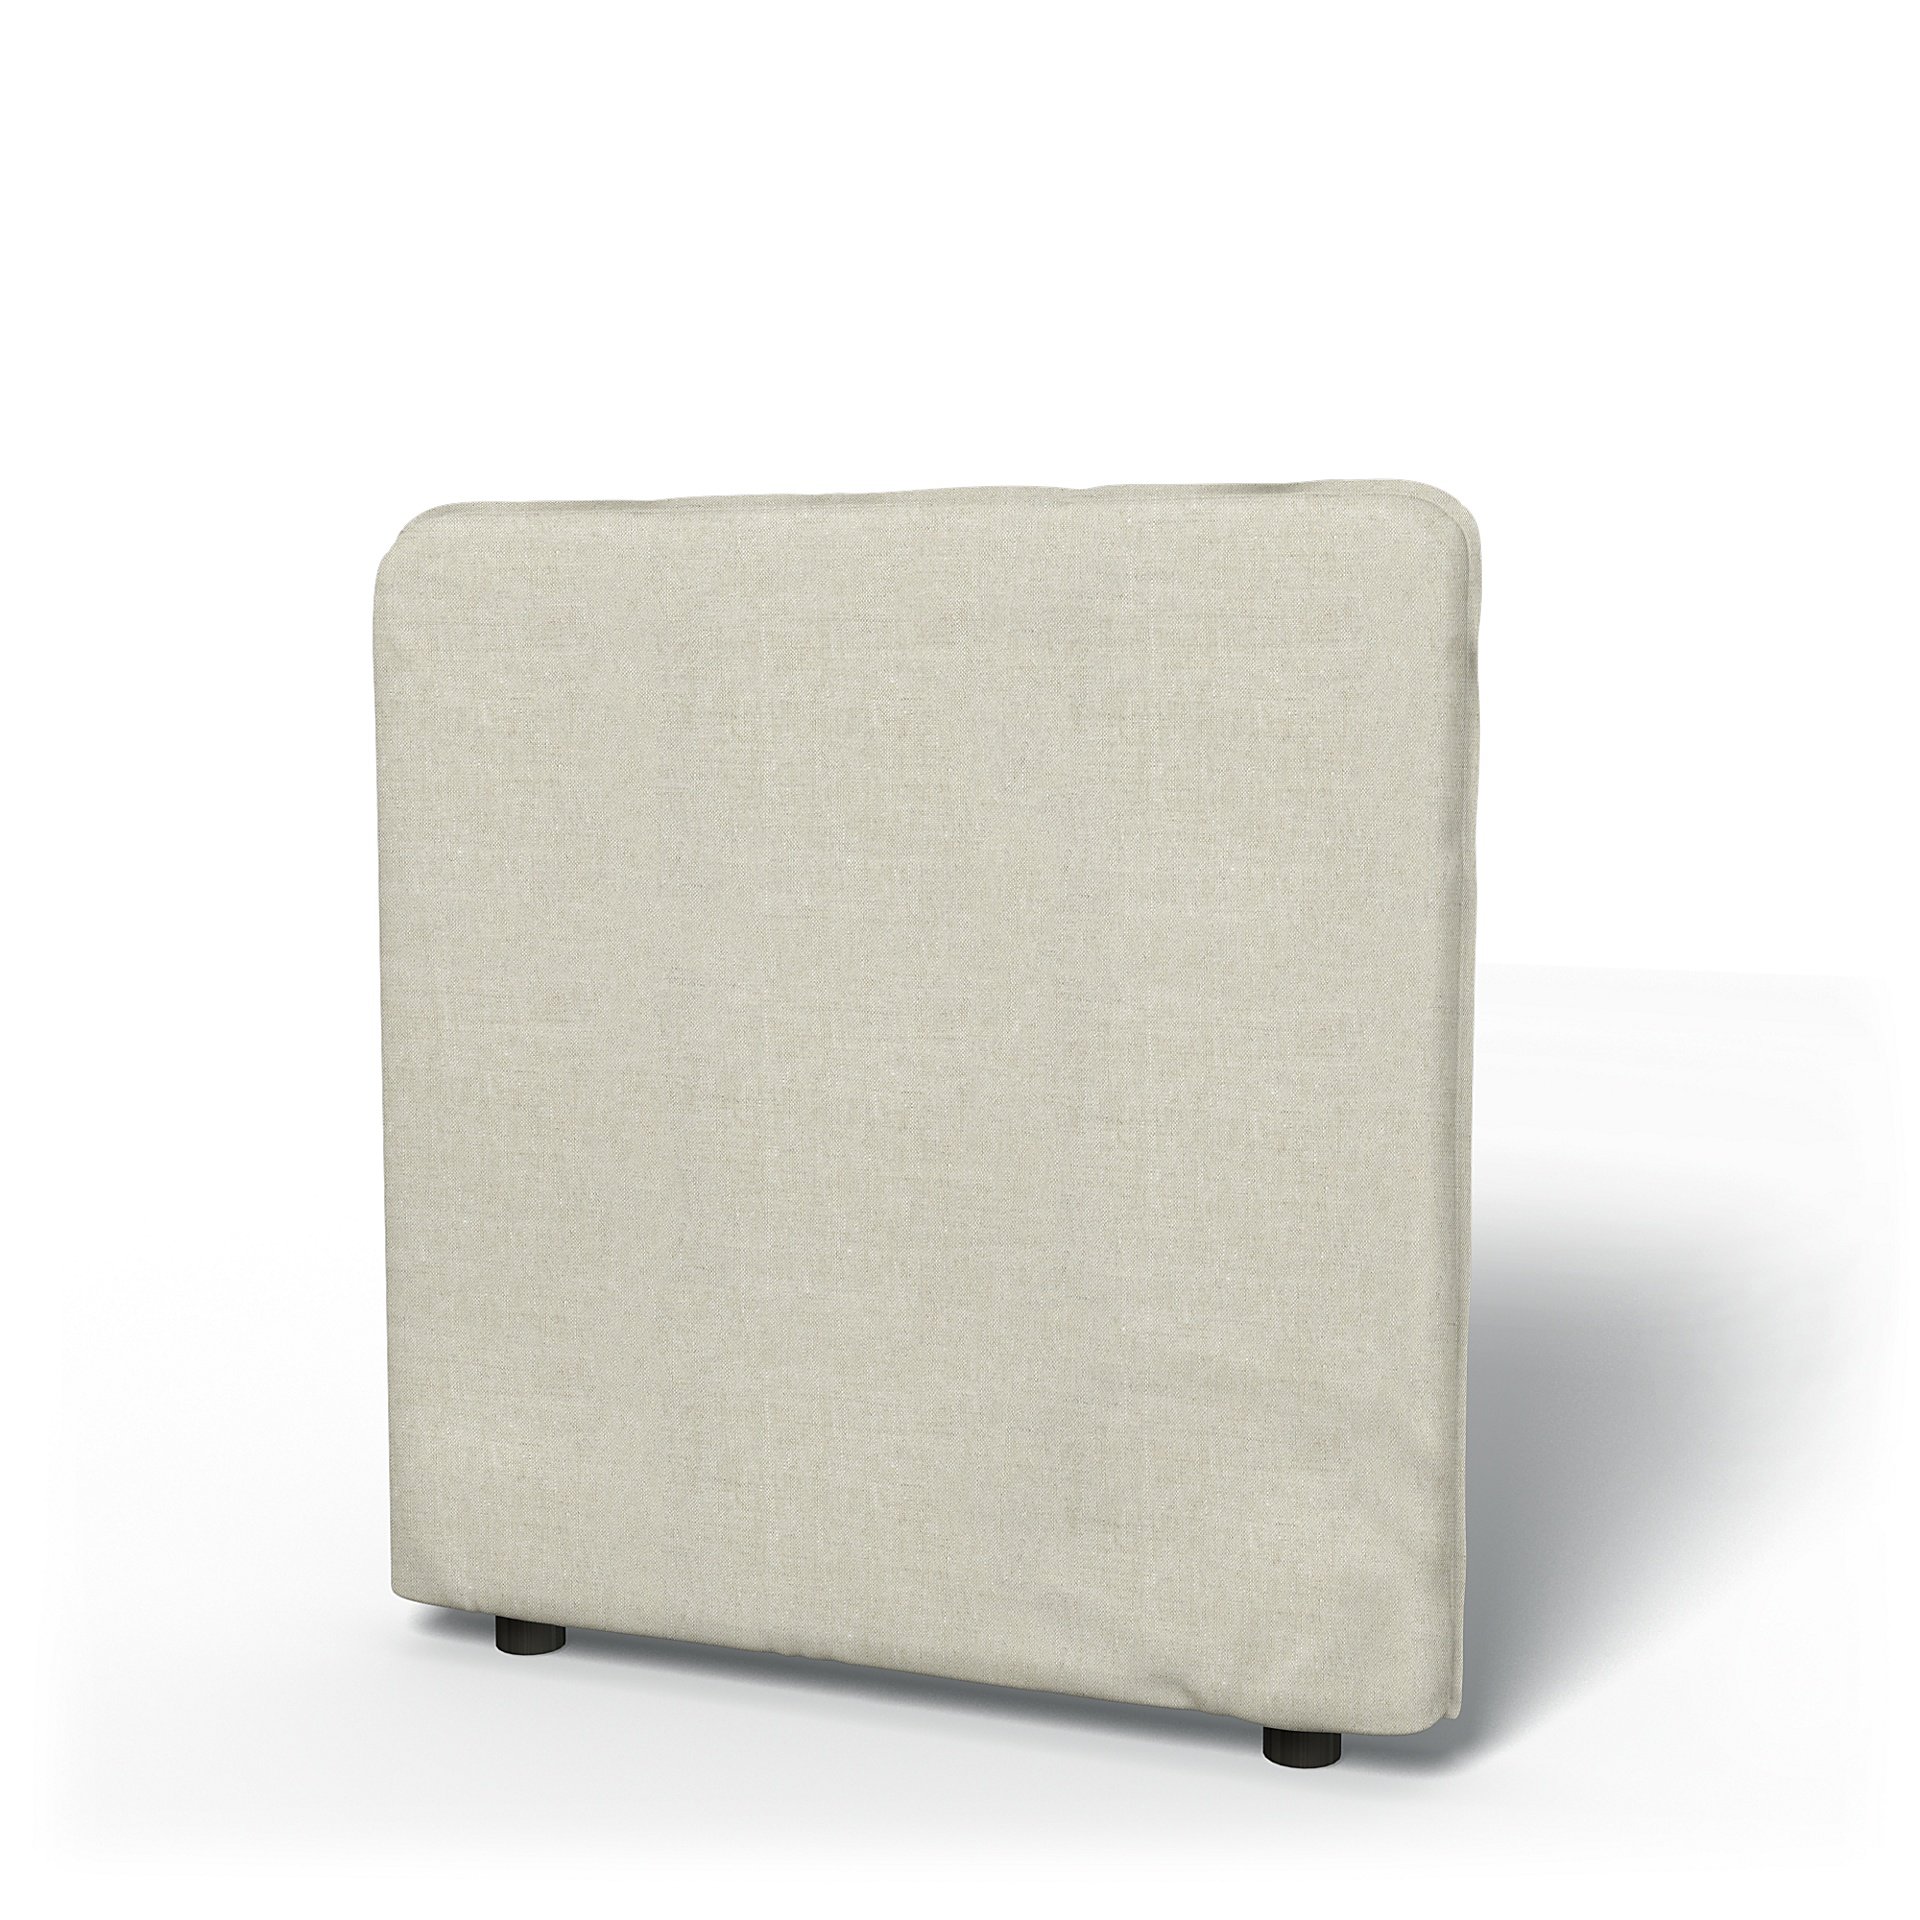 IKEA - Vallentuna Low Backrest Cover 80x80cm 32x32in, Natural, Linen - Bemz